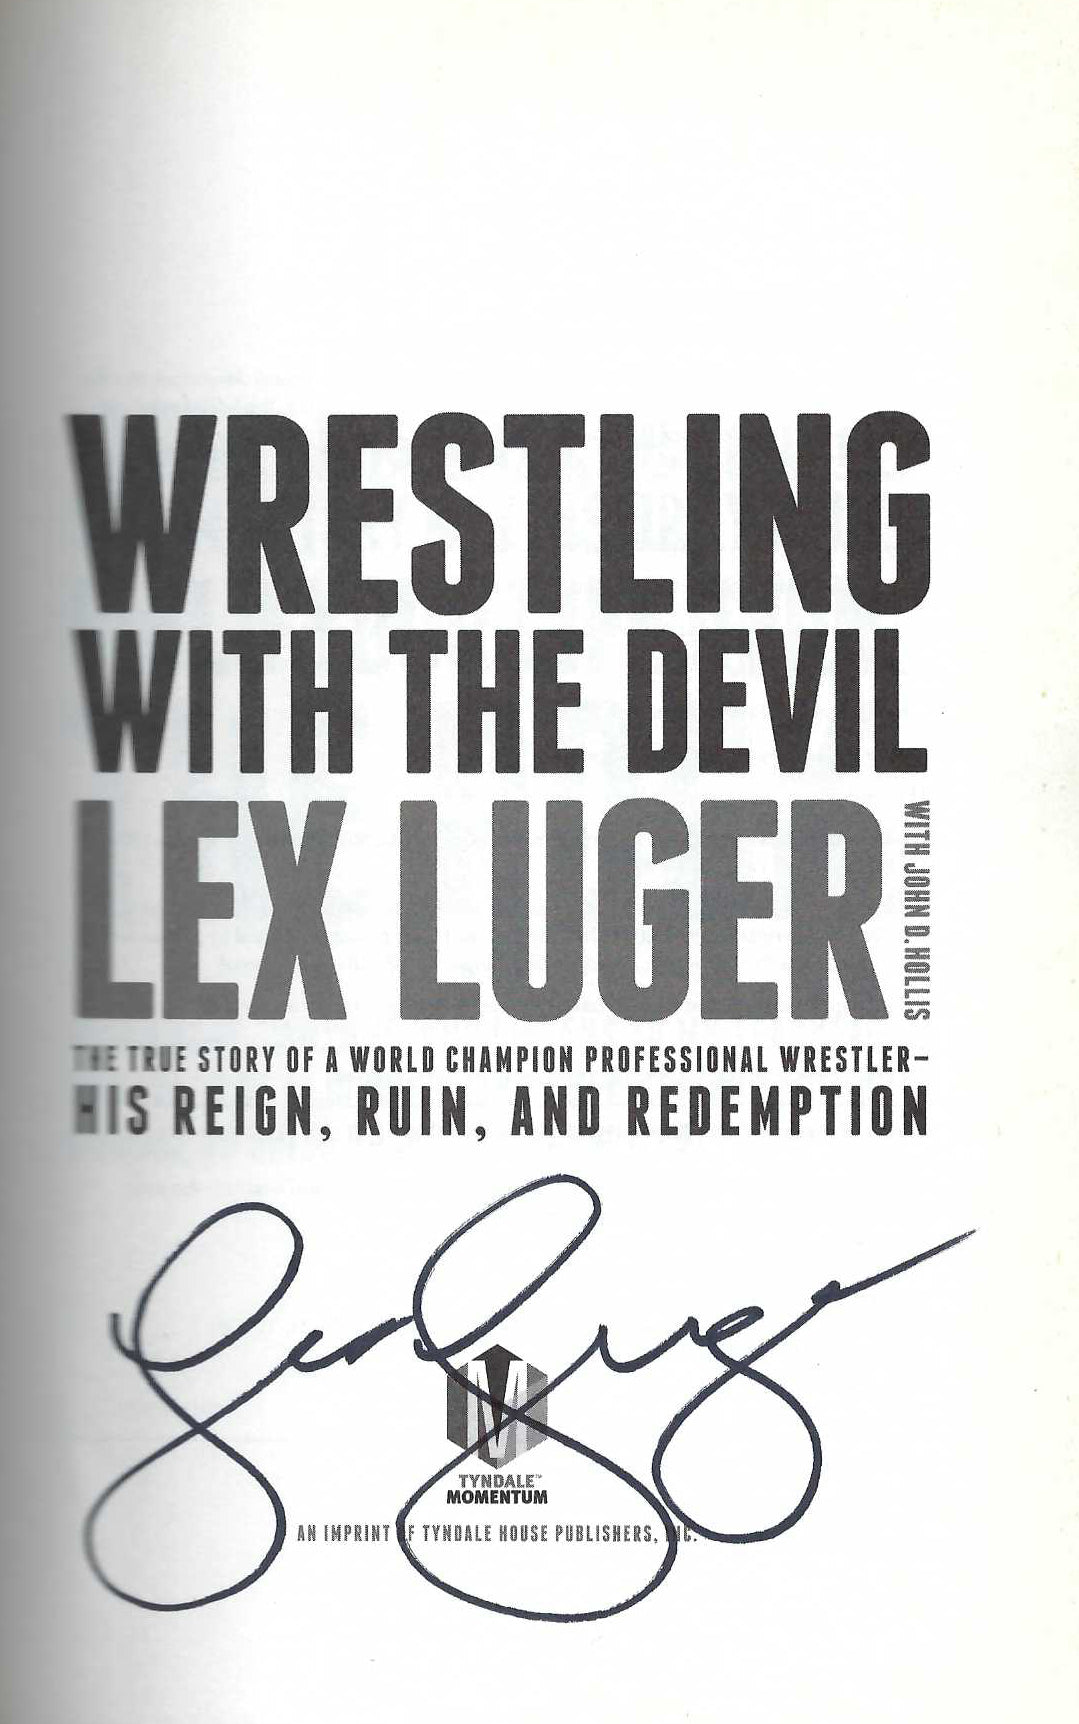 DSB13  Lex Luger Autographed Autobiography w/COA